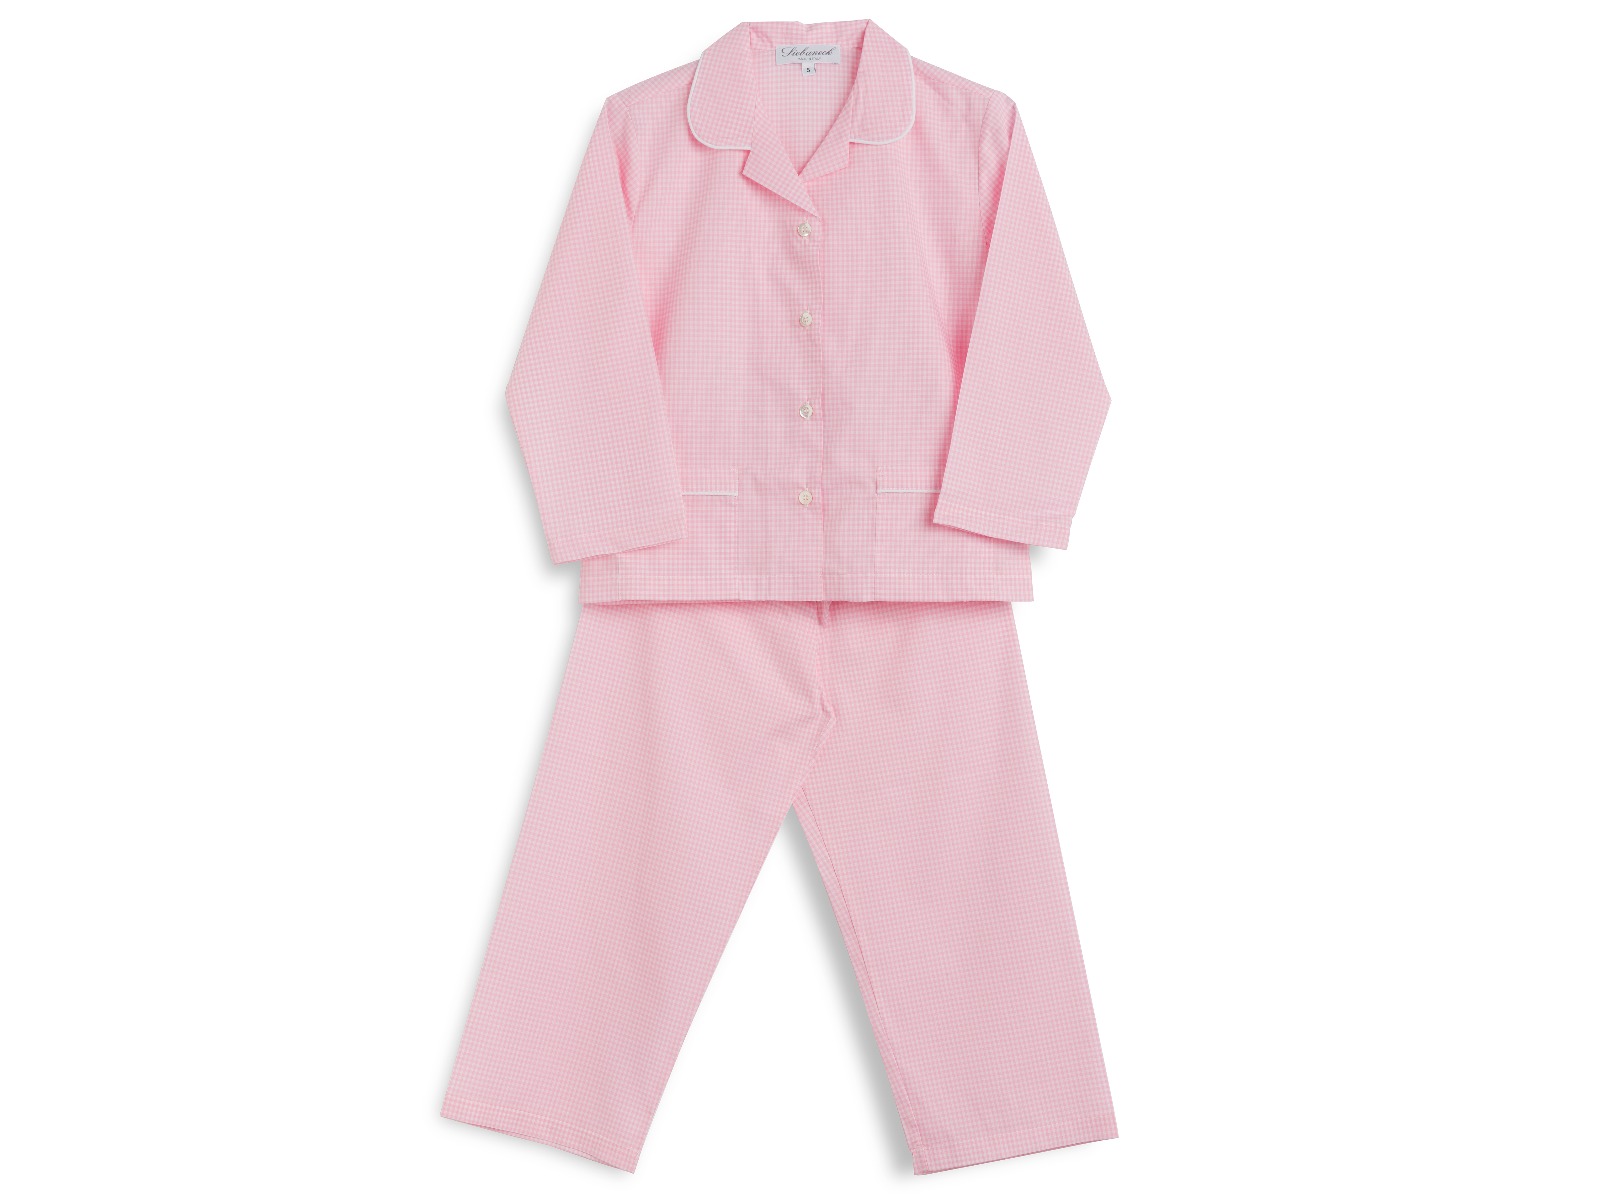 Siebaneck, i pigiami artigianali italiani: - bambino- mod.1 bis quadretti rosa profilo bianco 